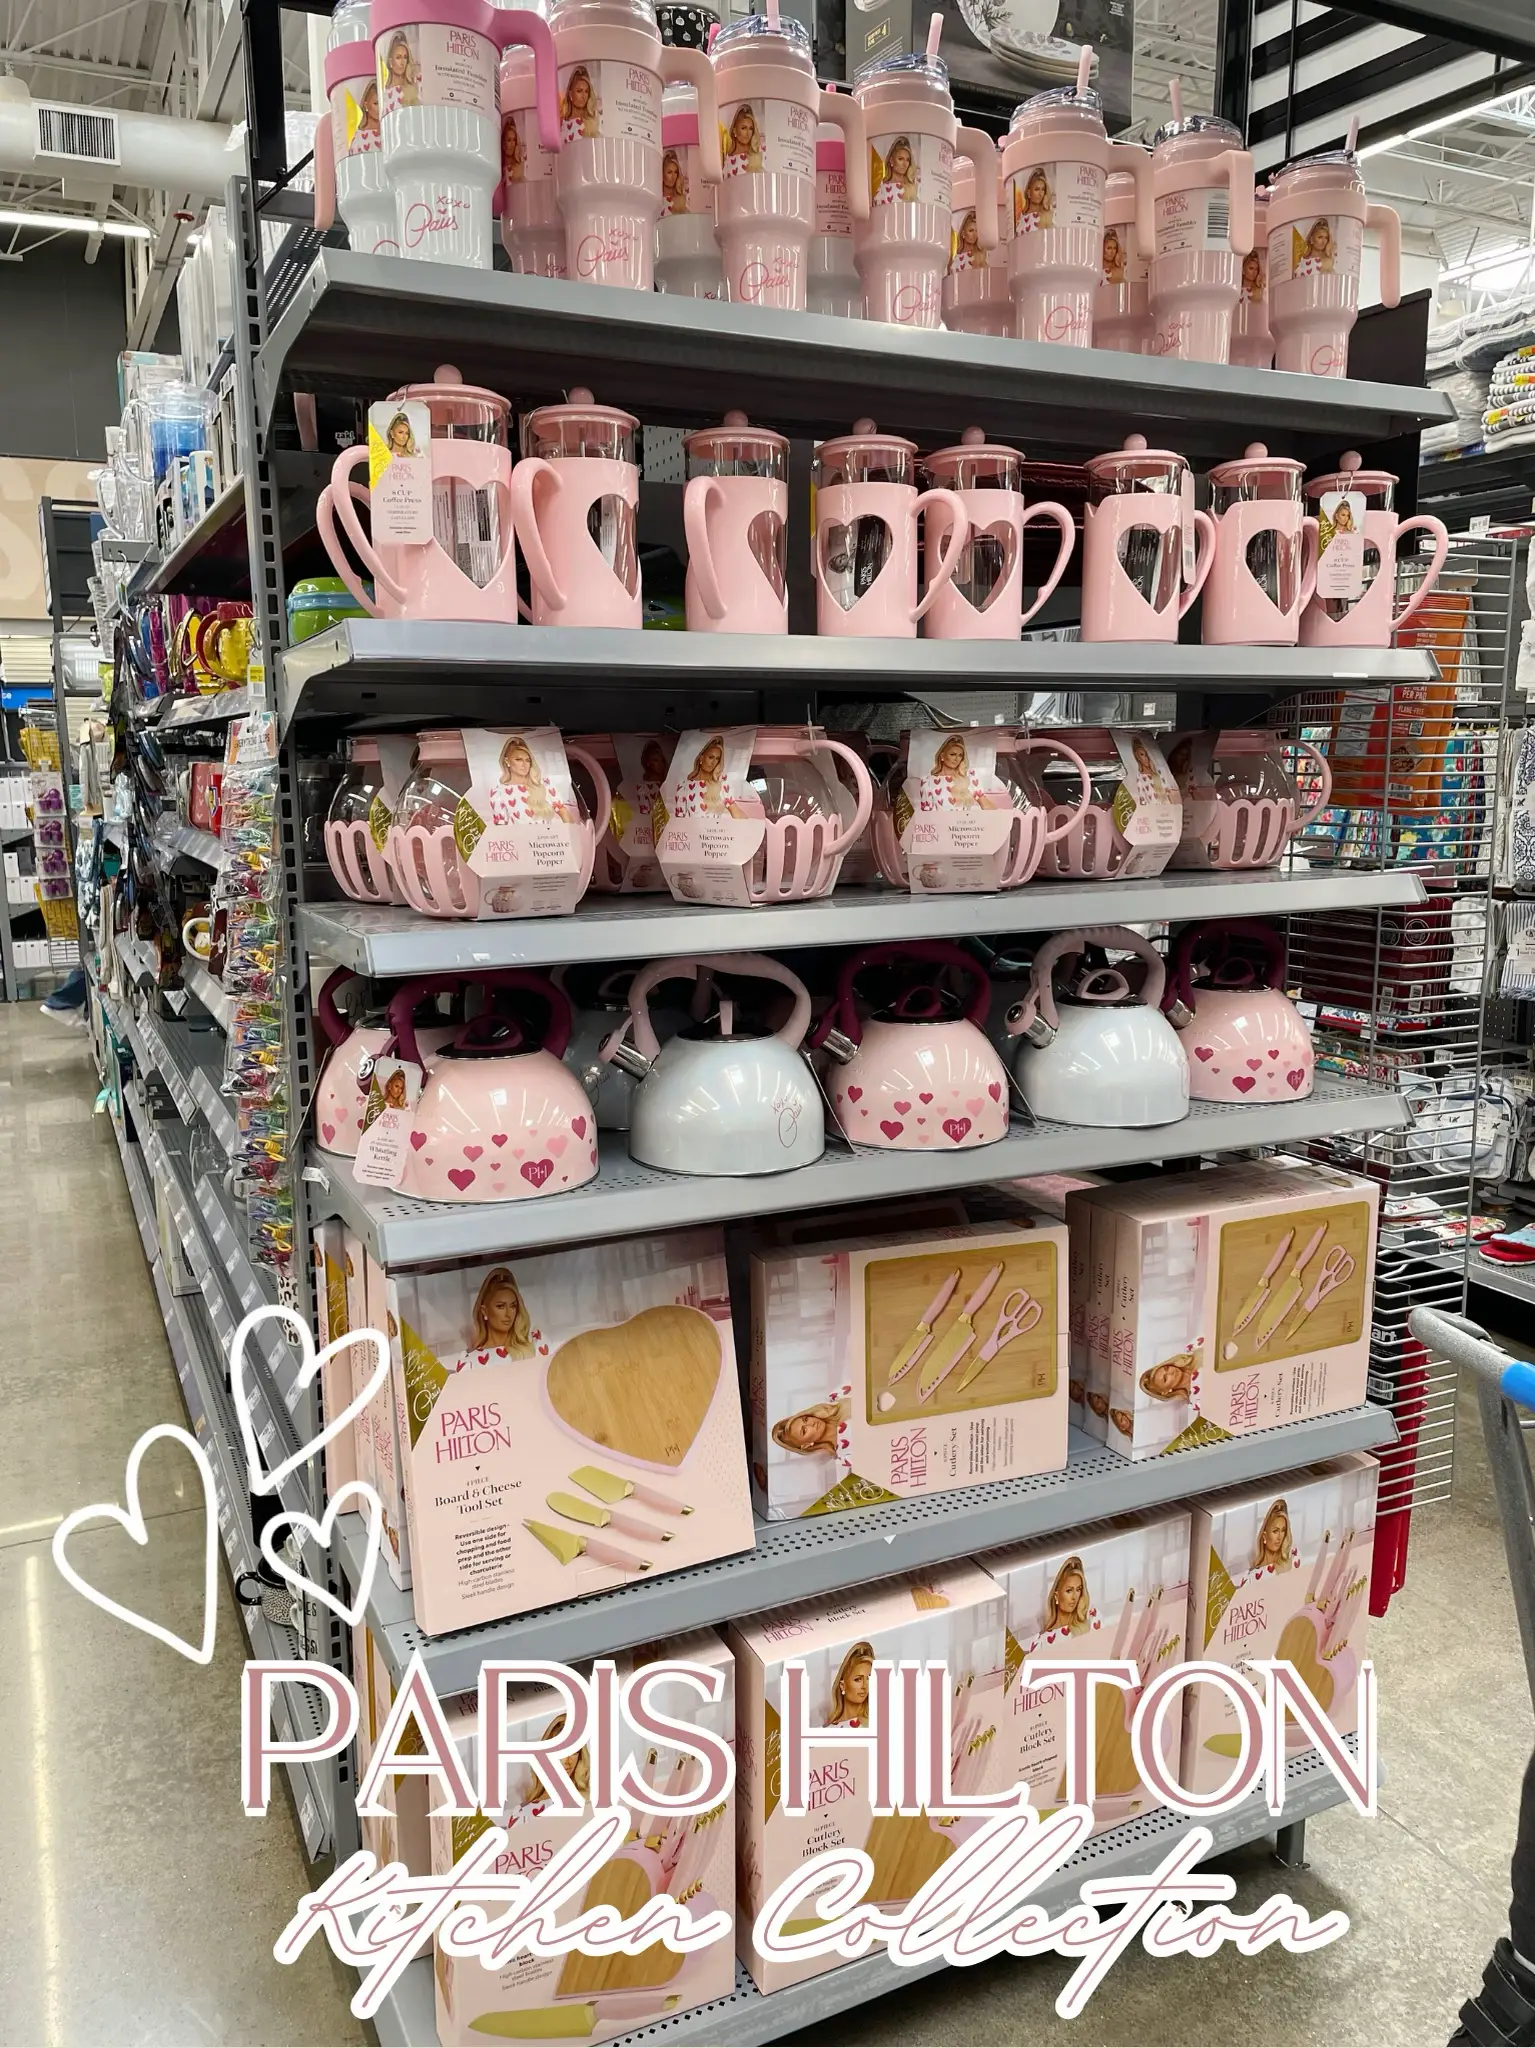 NEW Pink Paris Hilton Kitchen Collection! 🎀